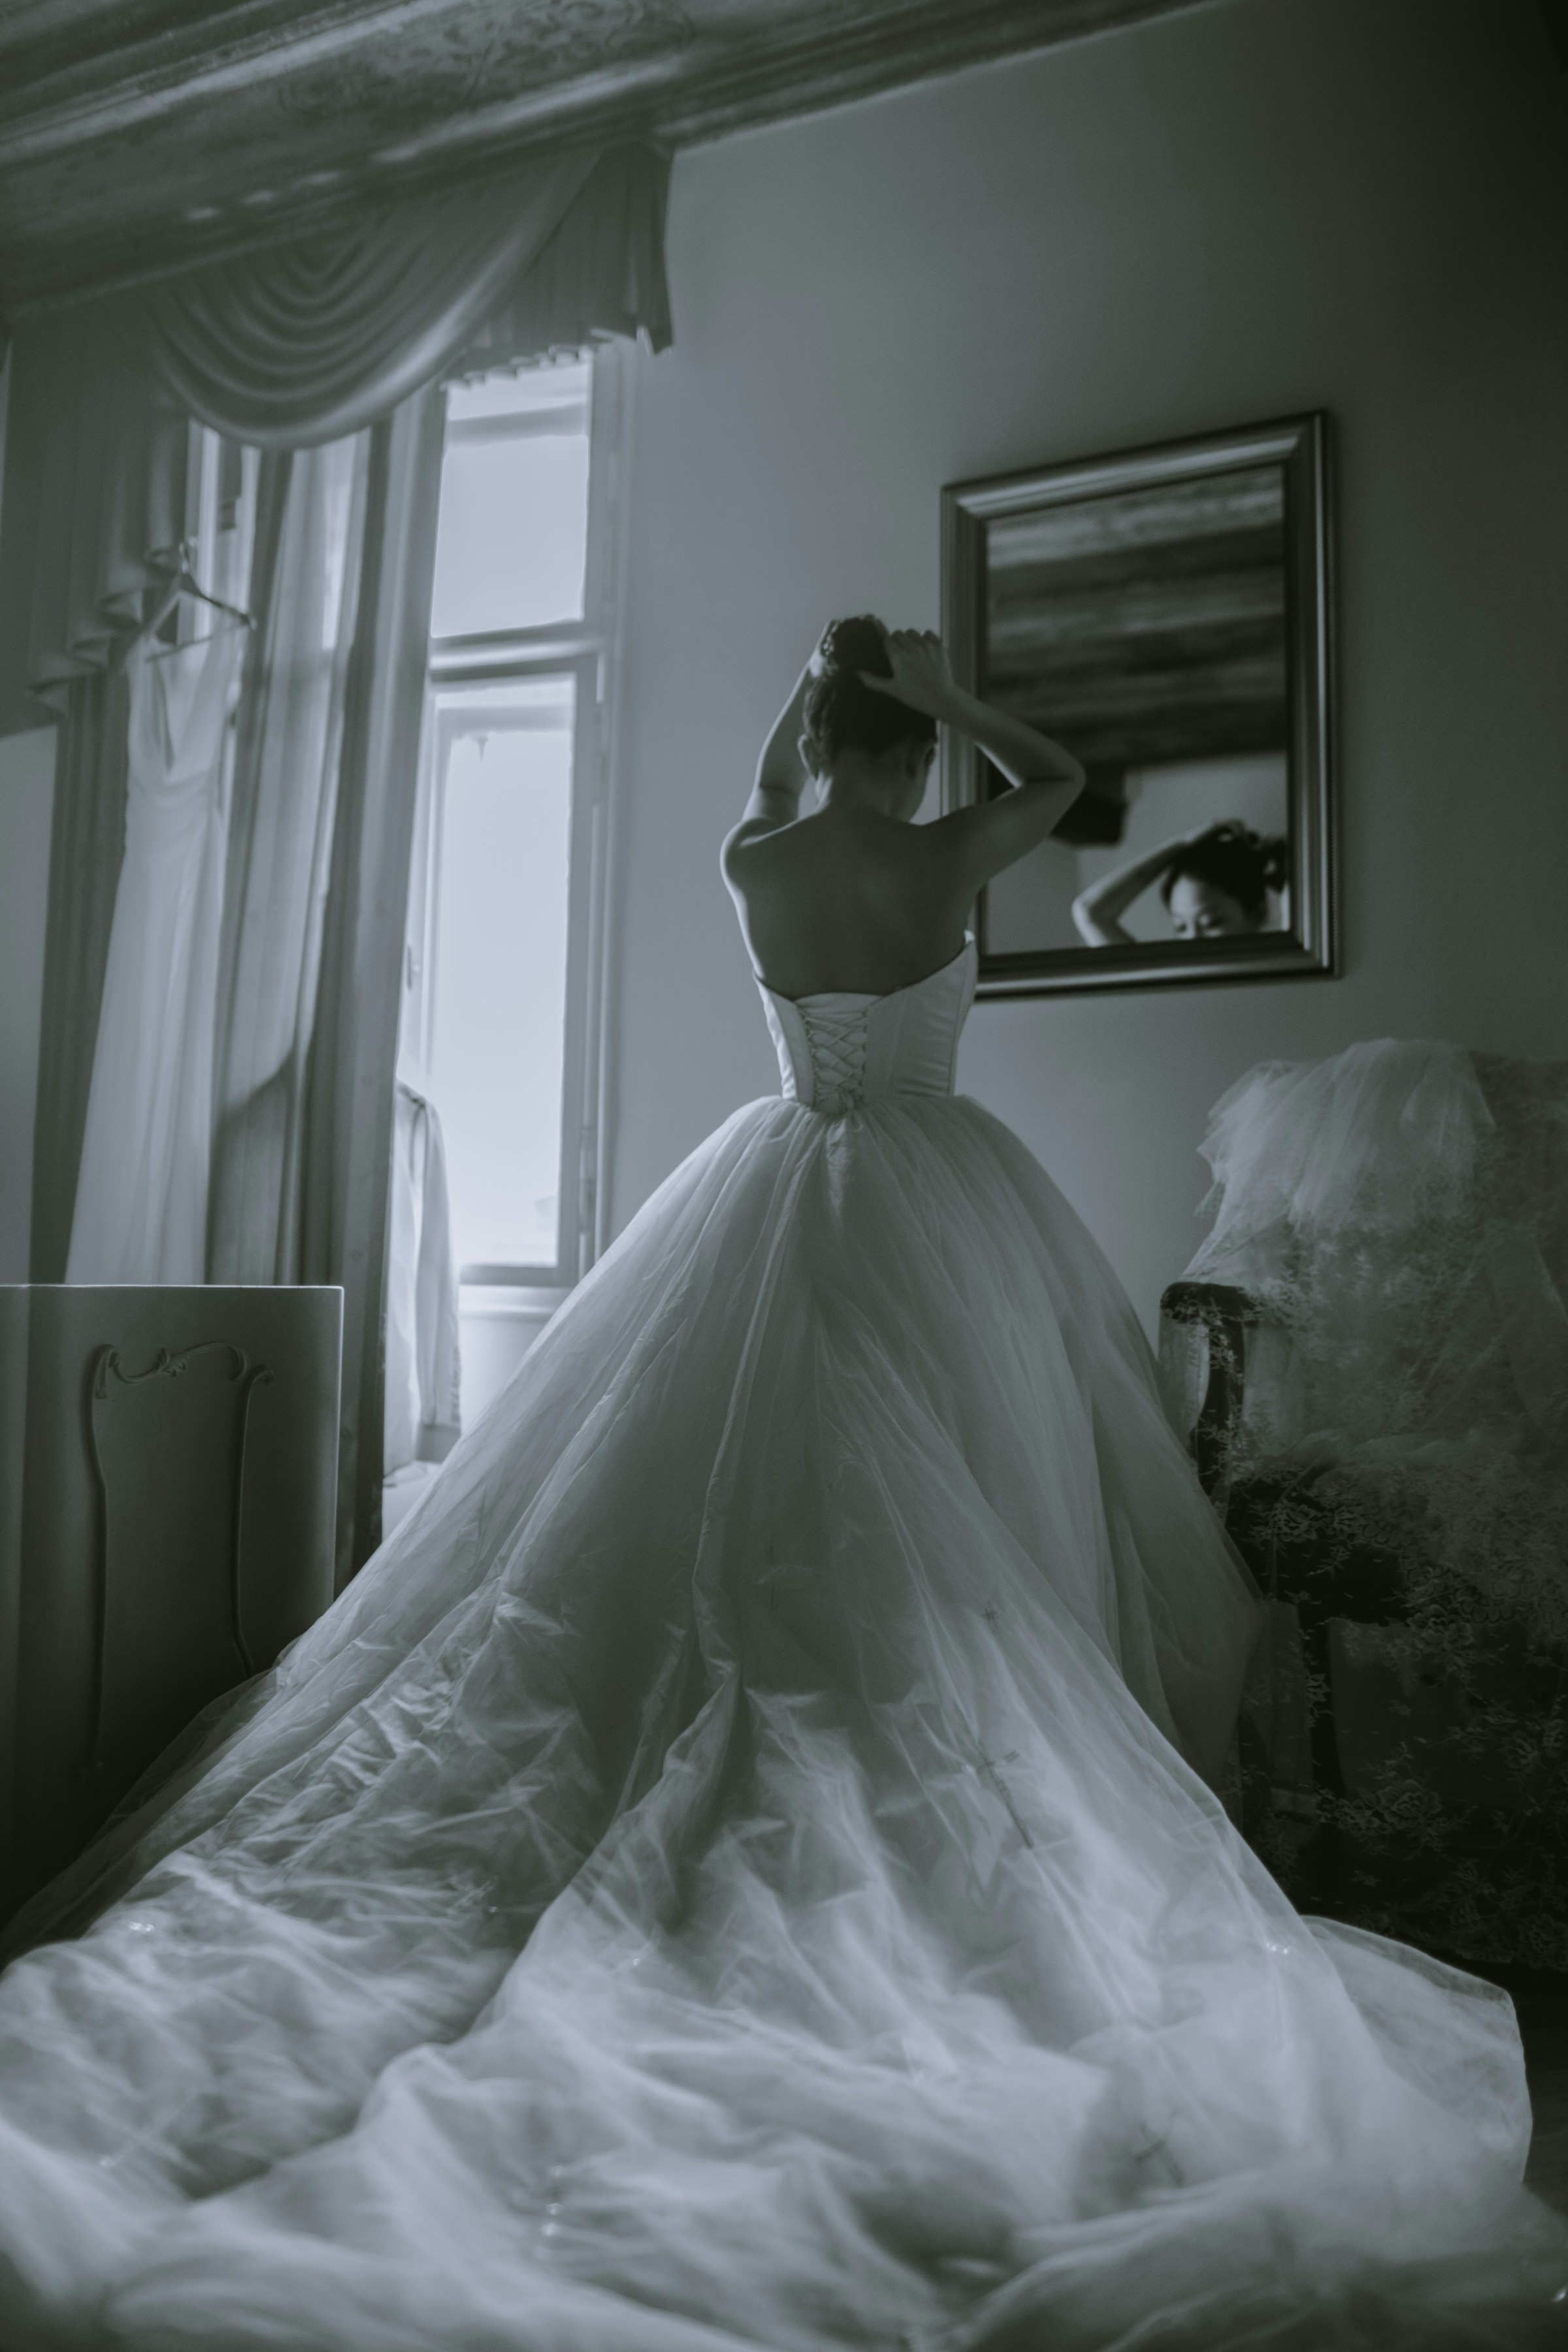 A bride | Source: Unsplash